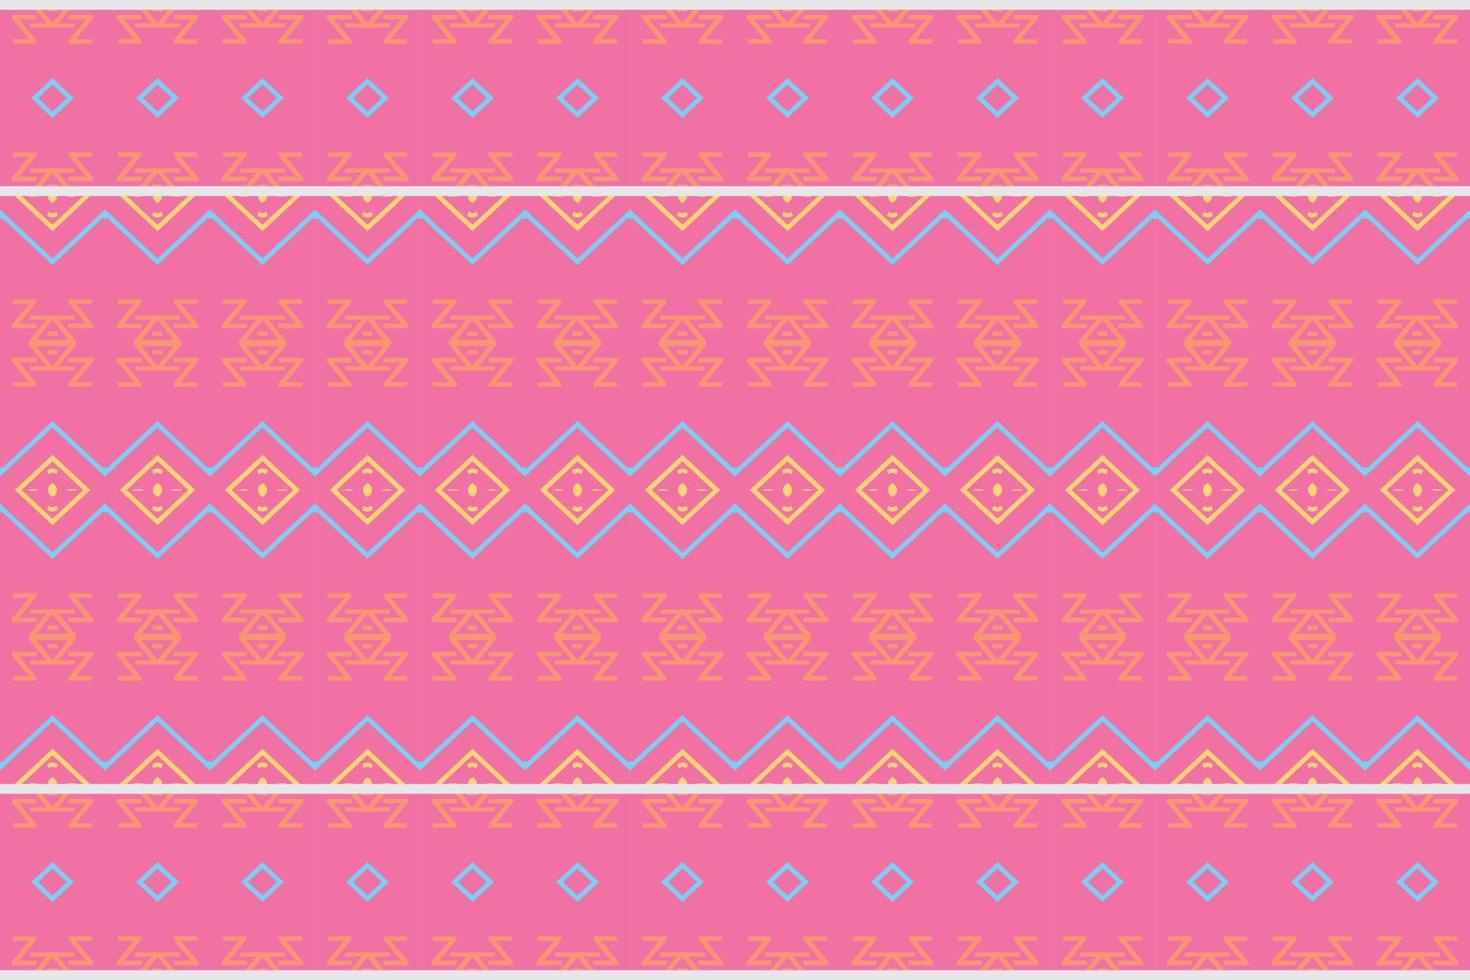 africain ethnique paisley modèle broderie Contexte. géométrique ethnique Oriental modèle traditionnel. ethnique aztèque style abstrait vecteur illustration. conception pour impression texture, tissu, sari, sari, tapis.